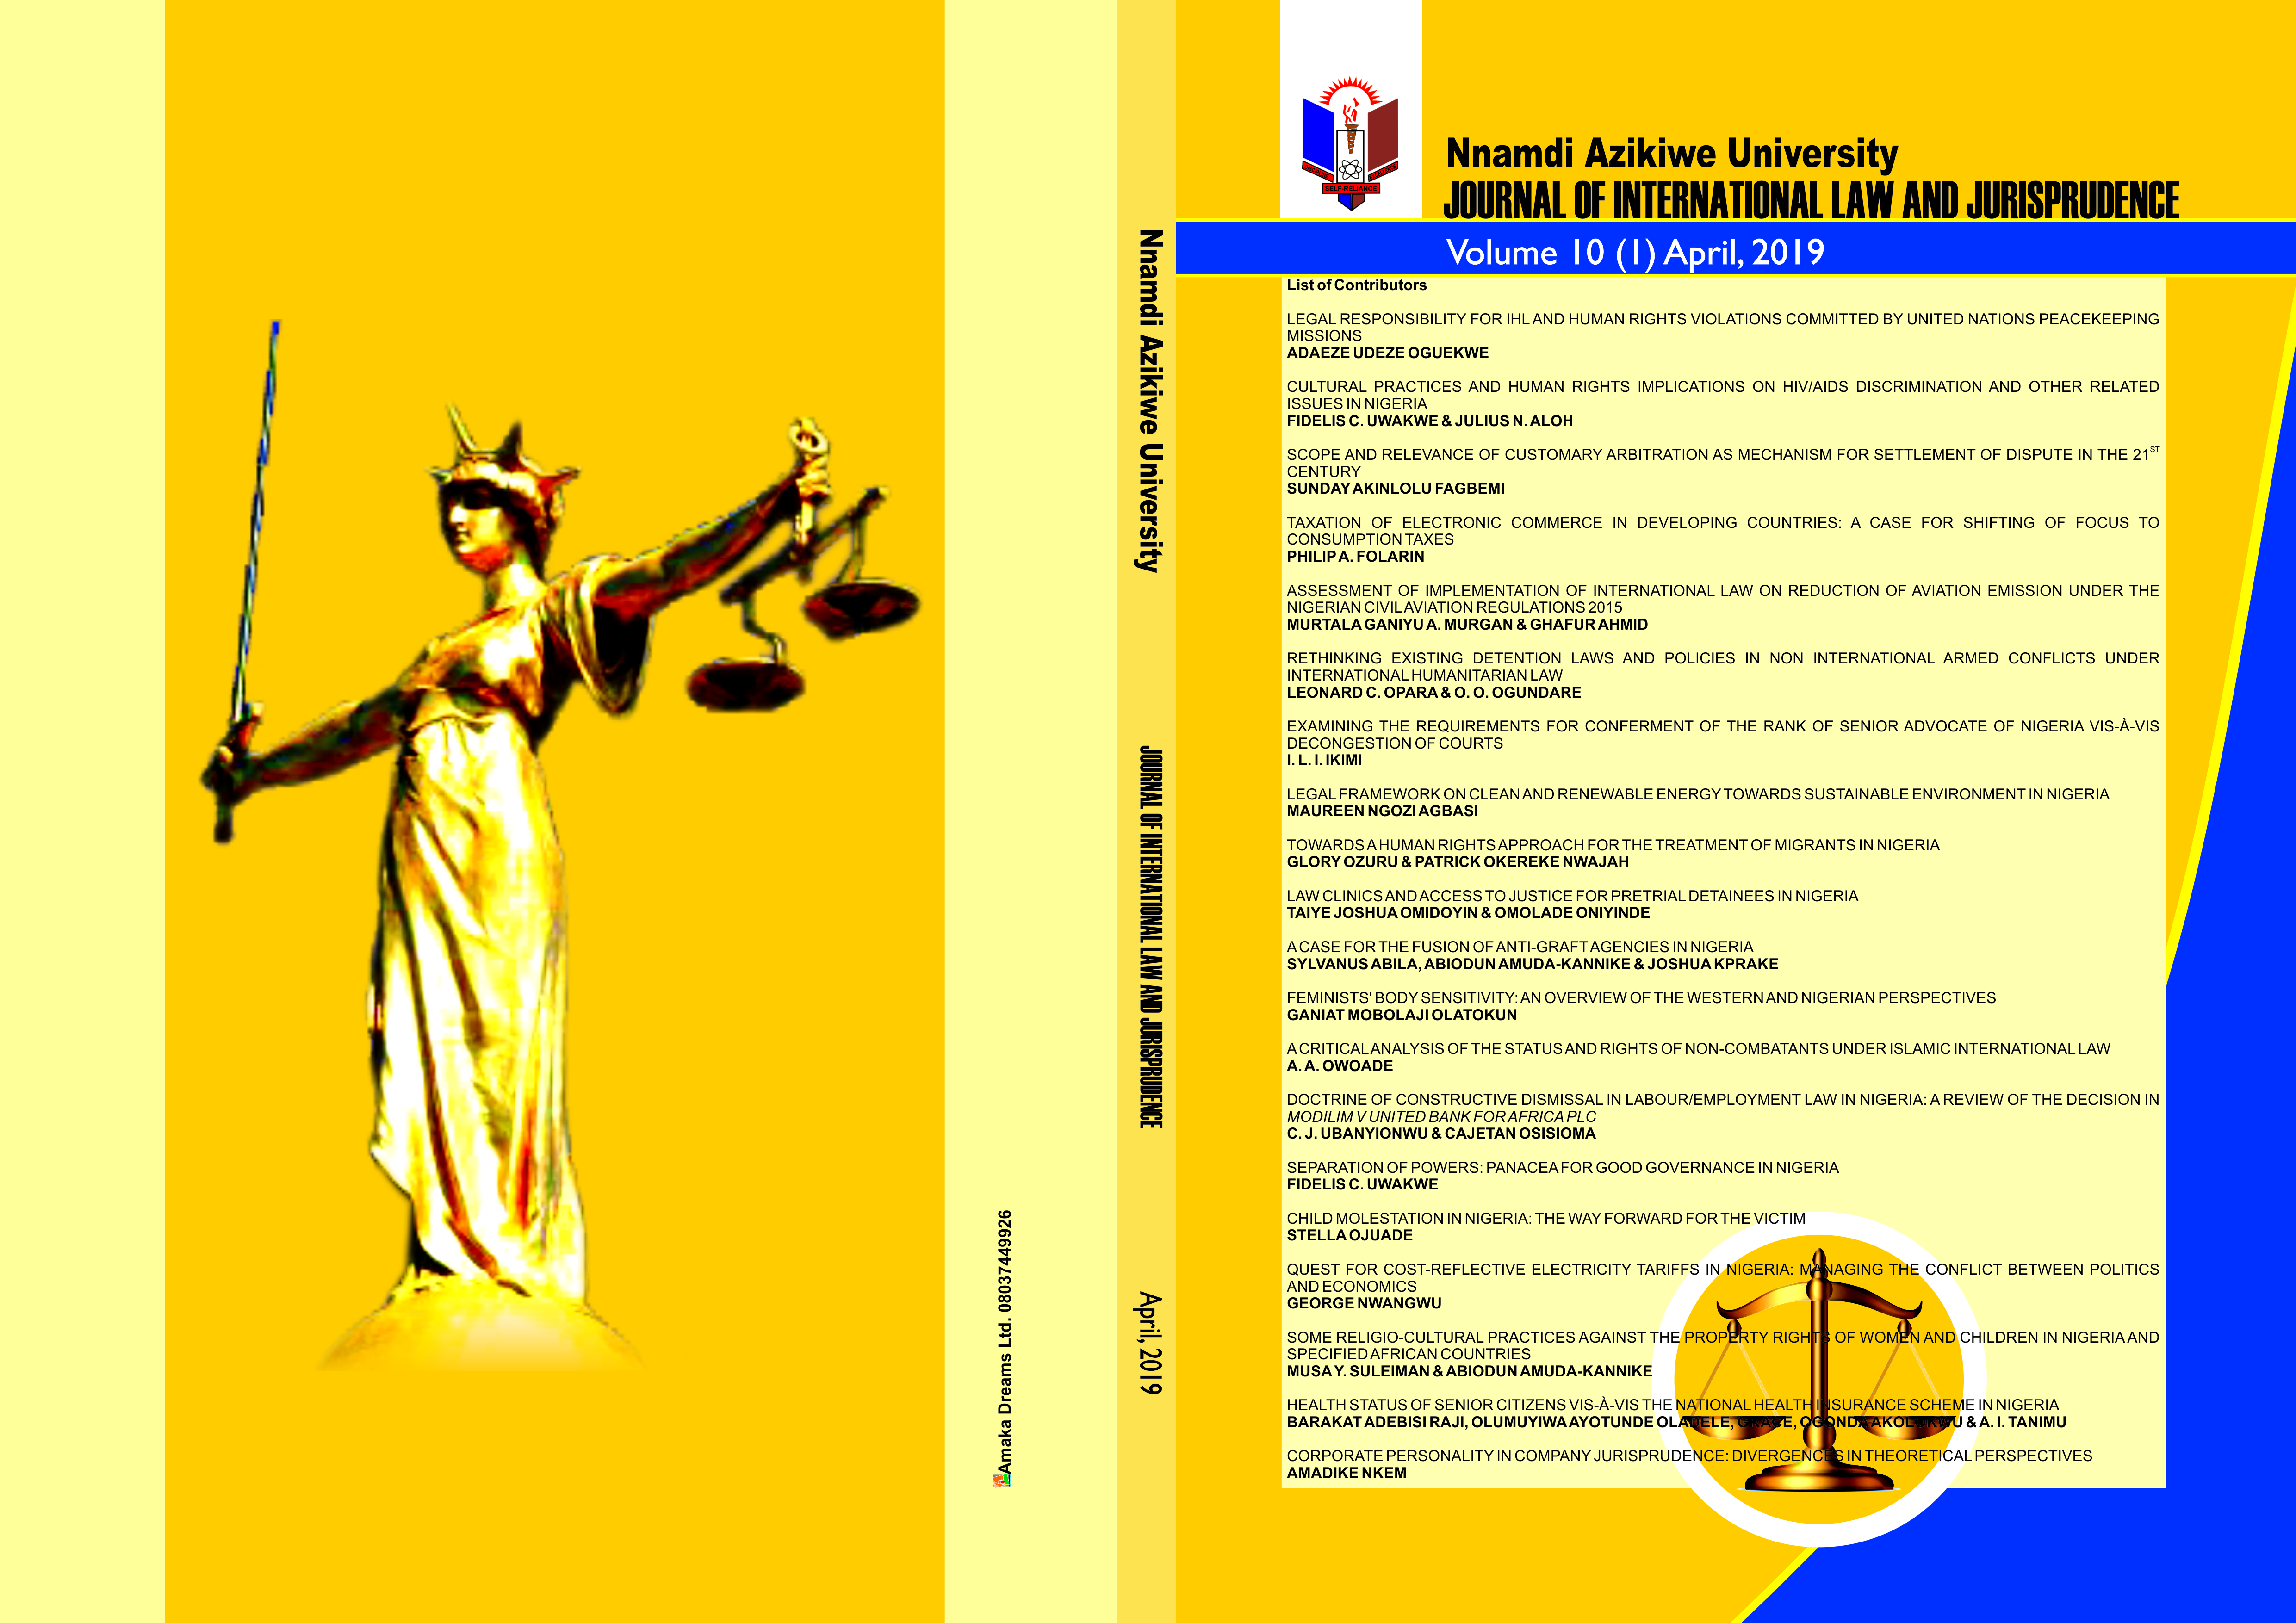 Nnamdi Azikiwe University Journal of International Law and Jurisprudence